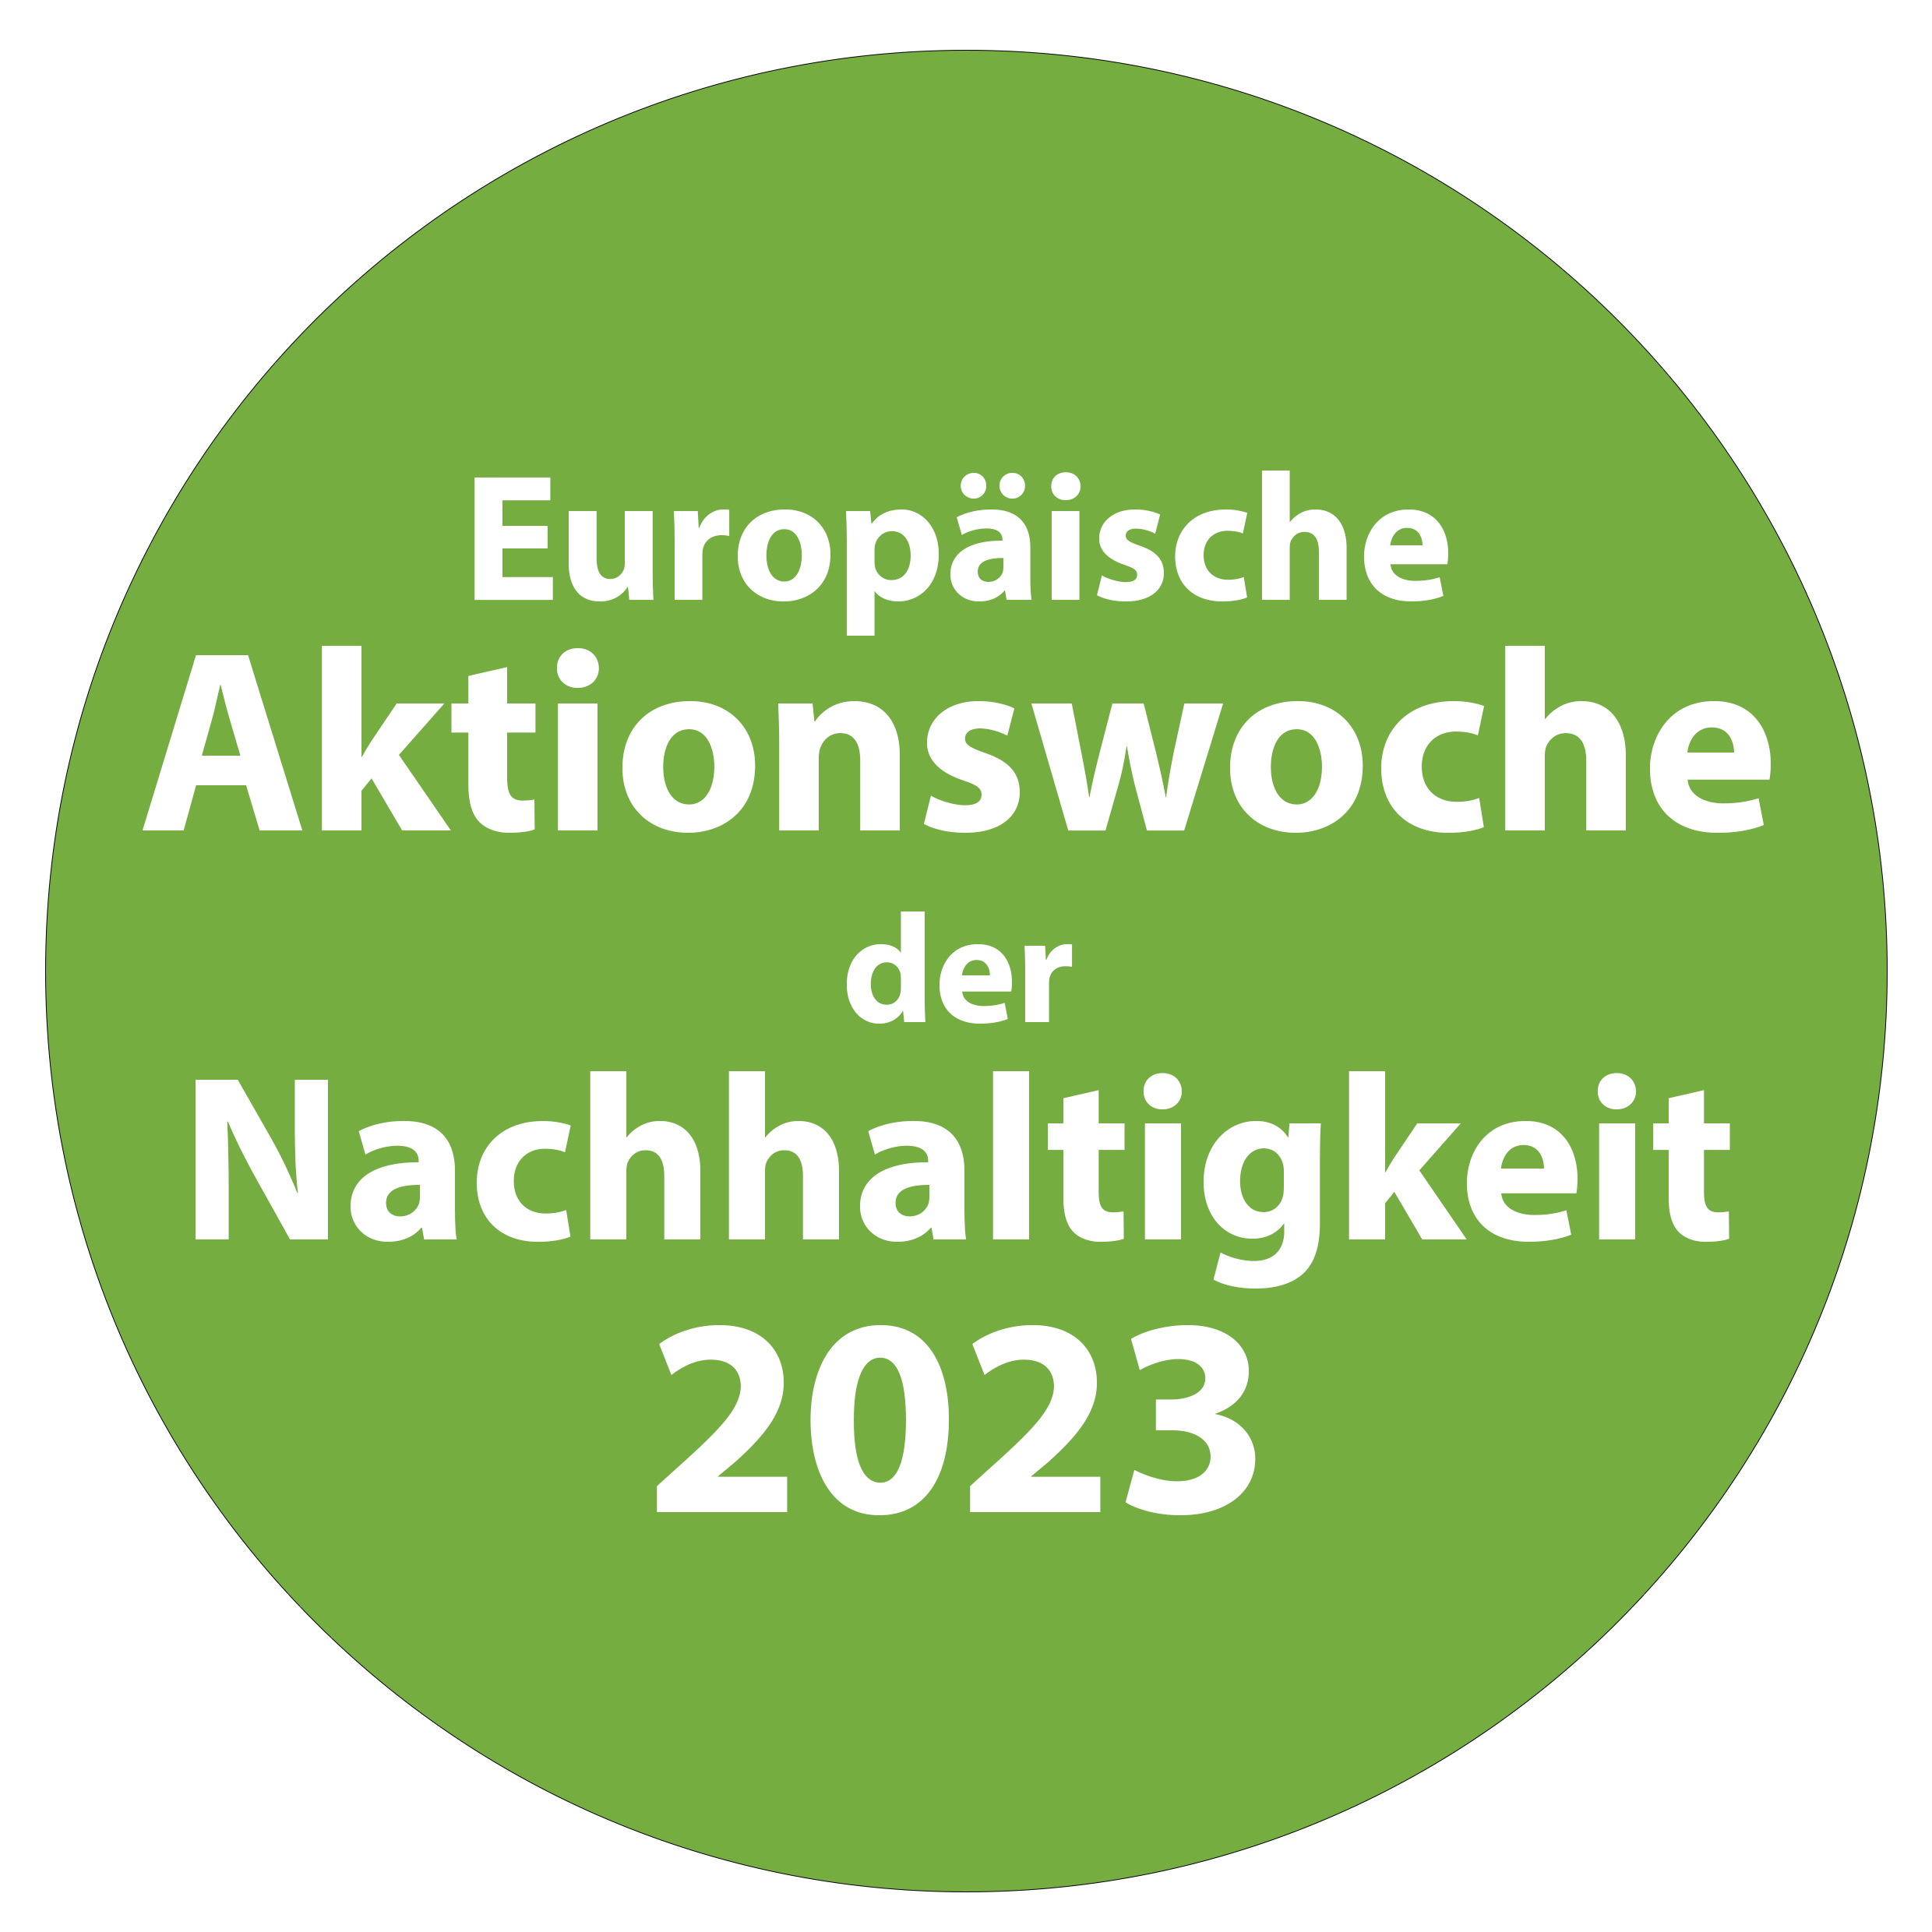 Europäische Aktionstage Nachhaltigkeit 2023